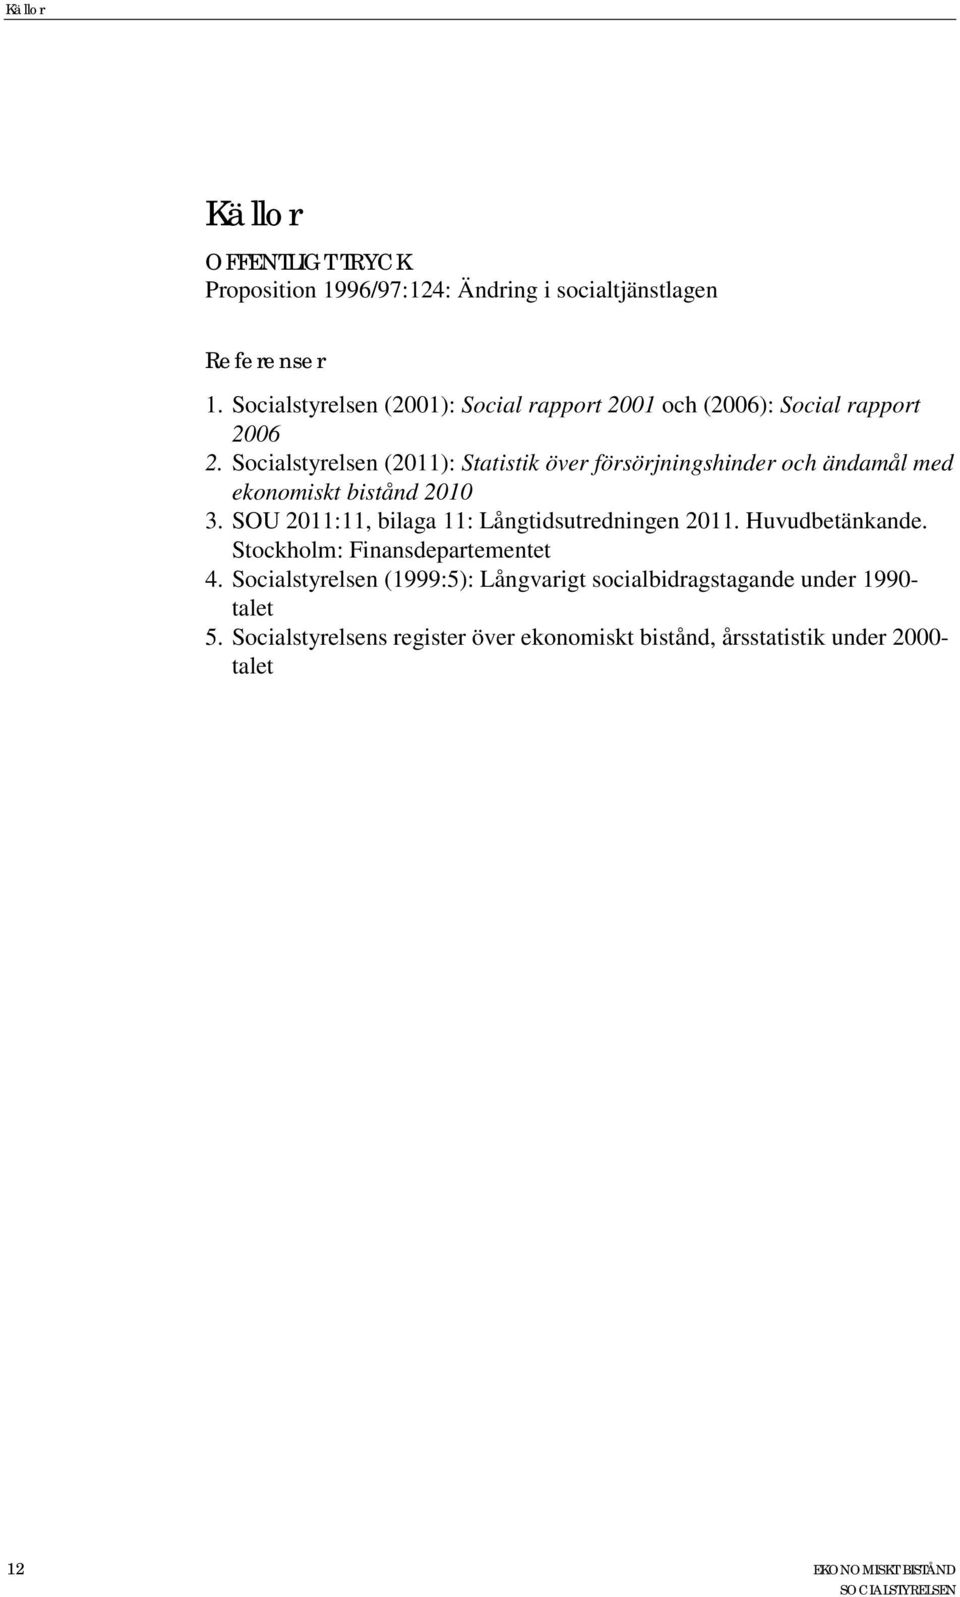 Socialstyrelsen (2011): Statistik över försörjningshinder och ändamål med ekonomiskt bistånd 2010 3.